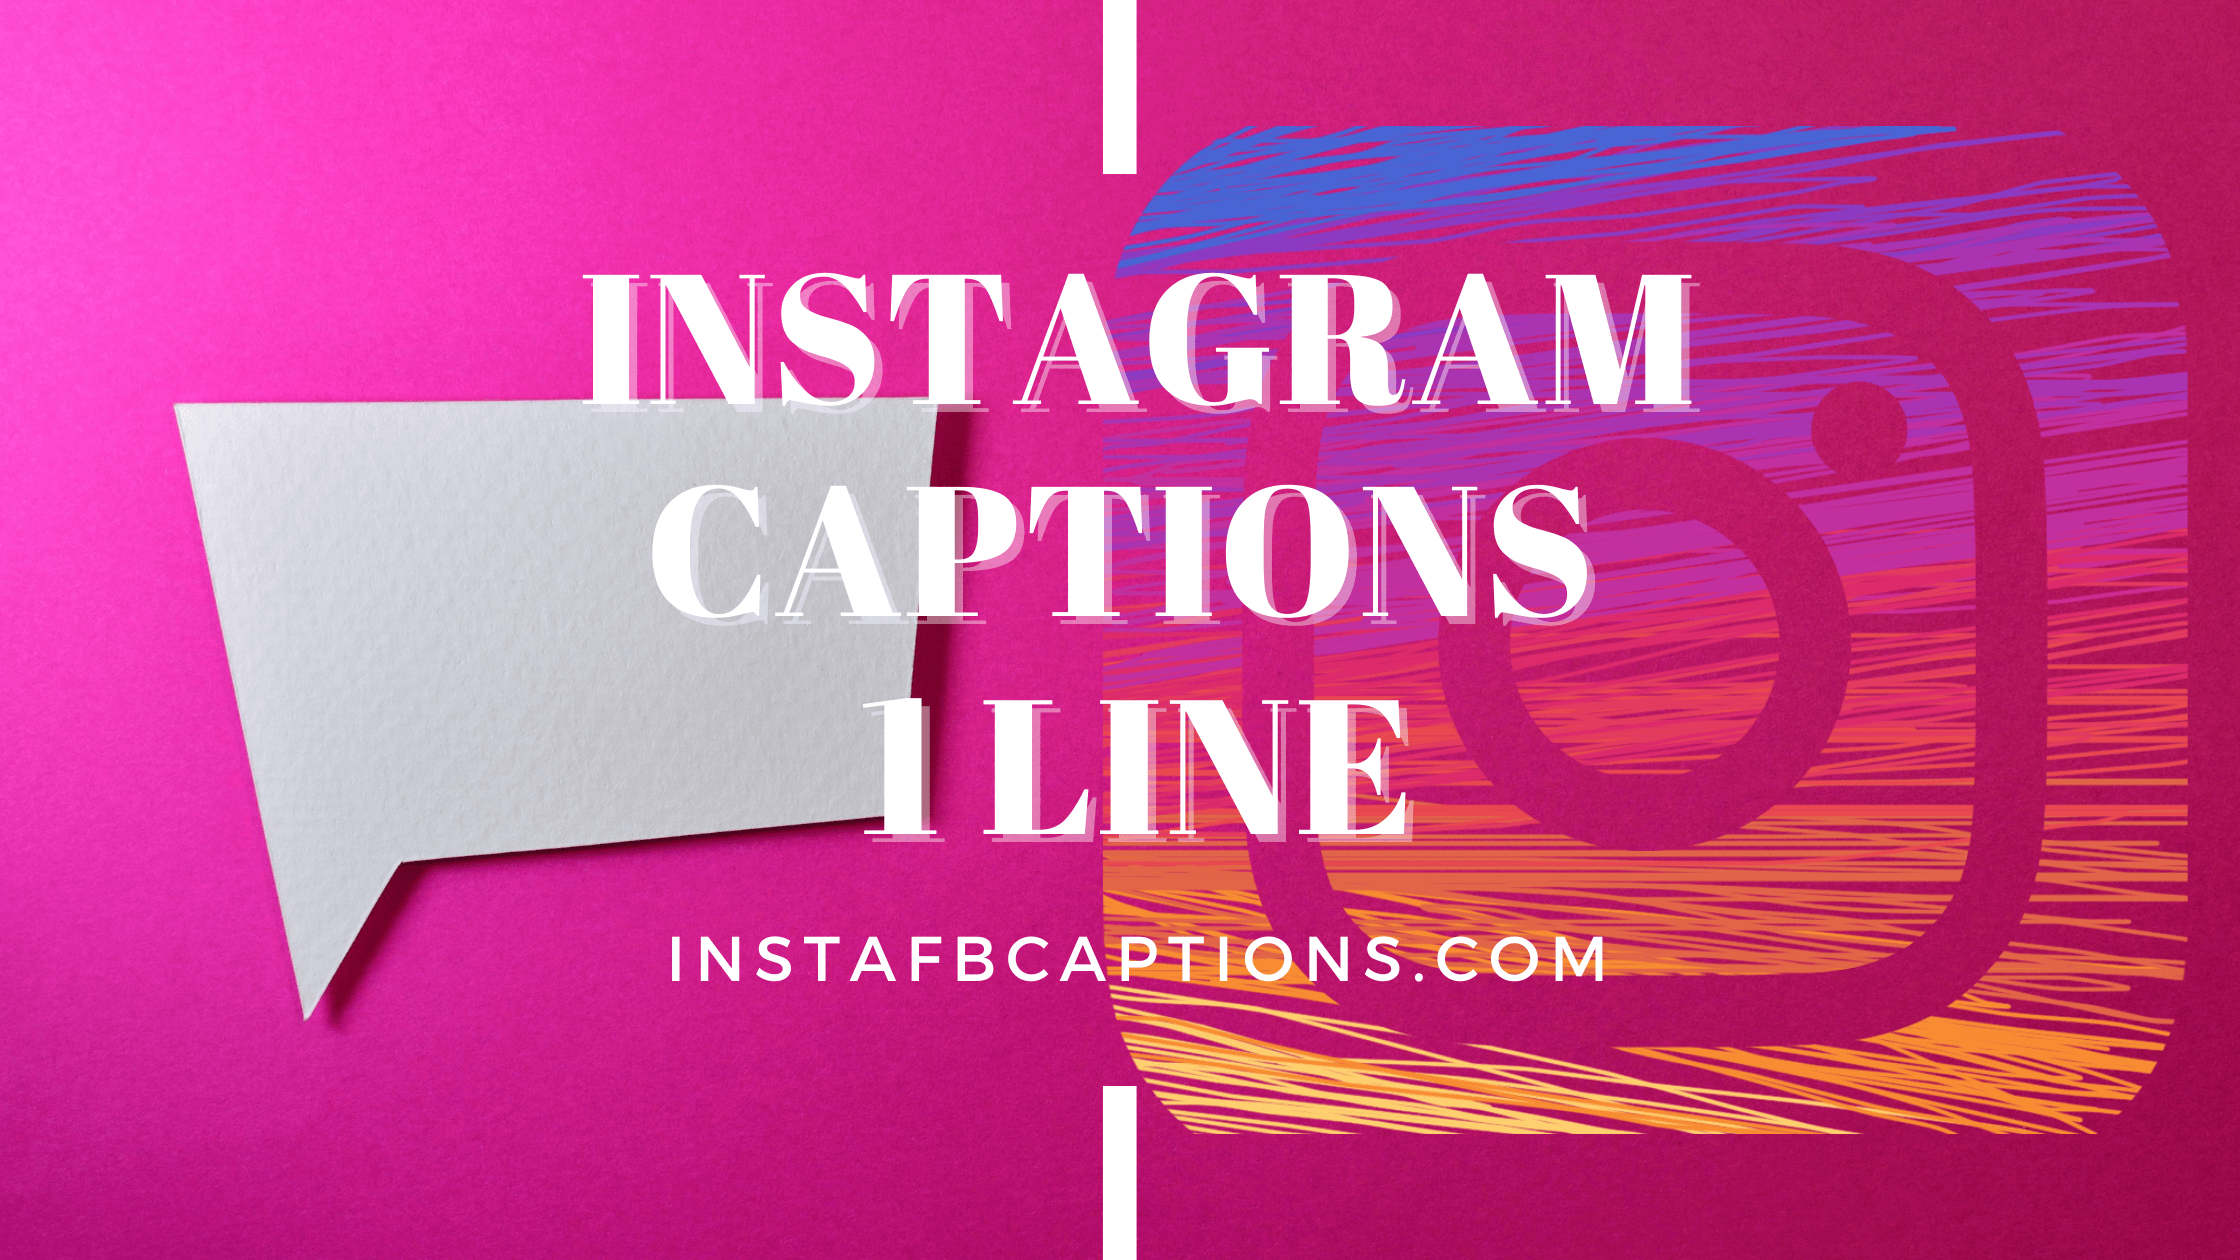 Instagram Captions 1 Line  - Instagram Captions 1 Line 1 - 89 One Line Captions for Instagram Pics in 2022